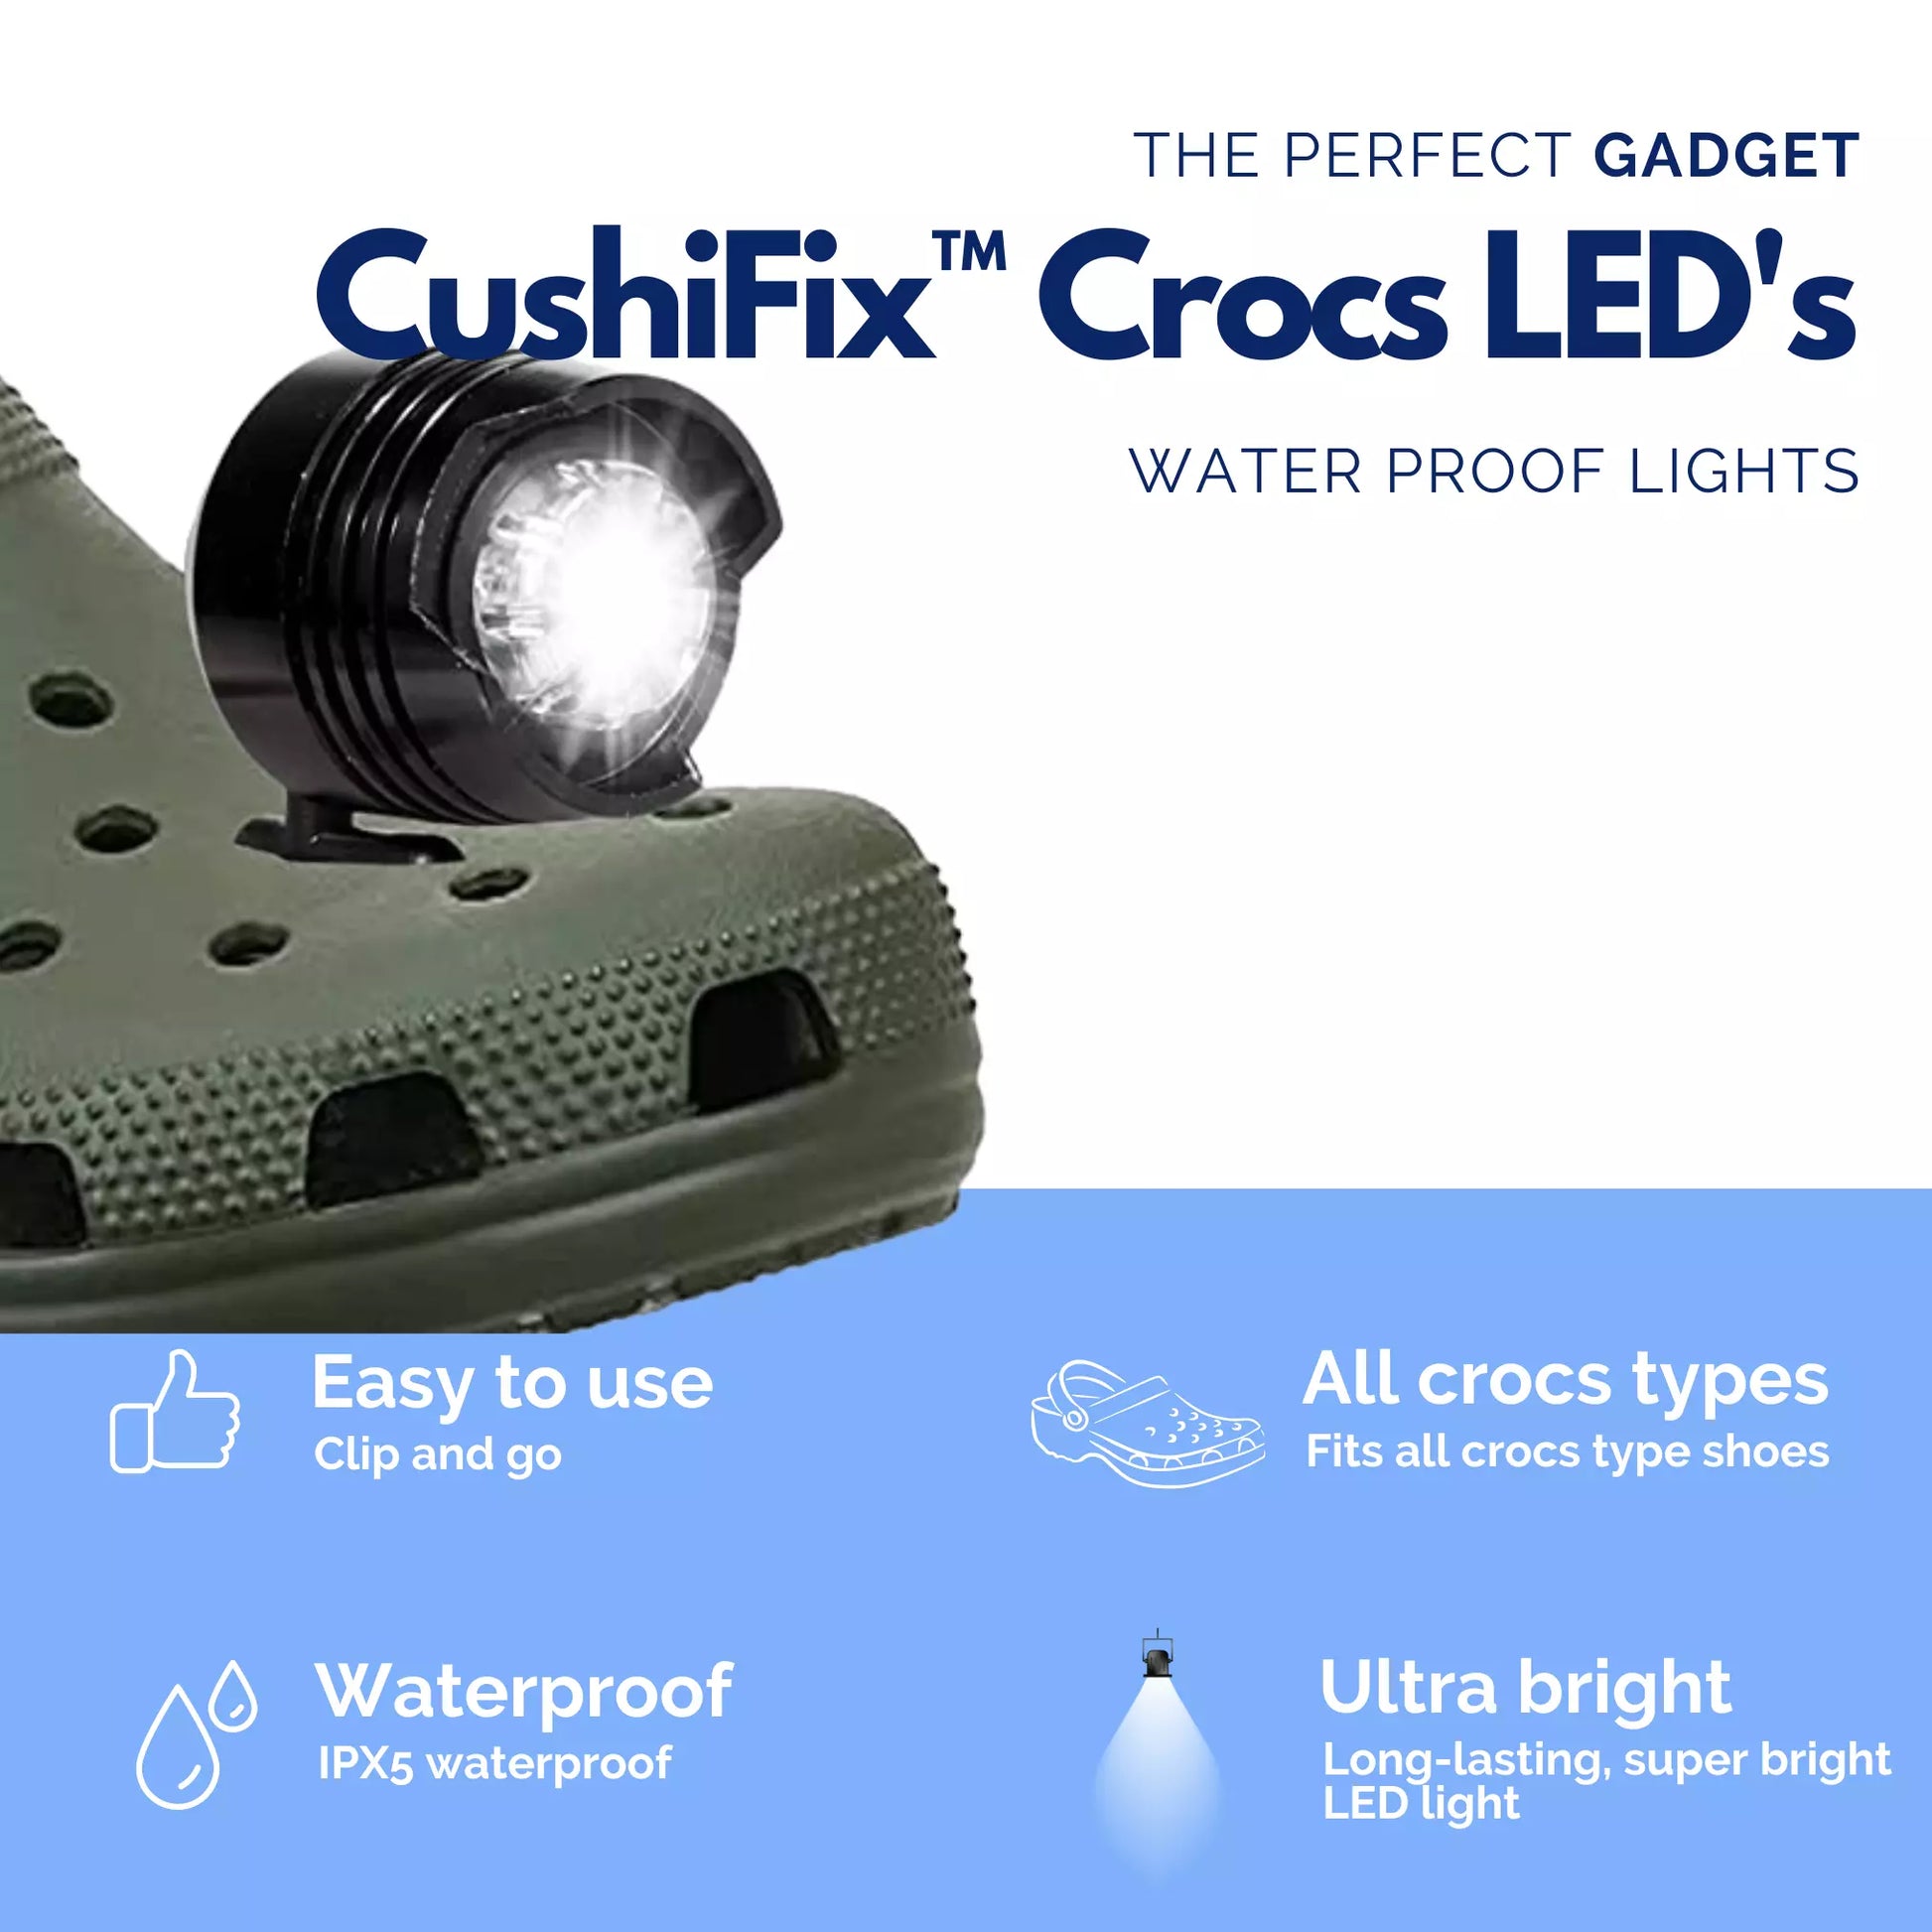 Croc LED's – CushiFix™